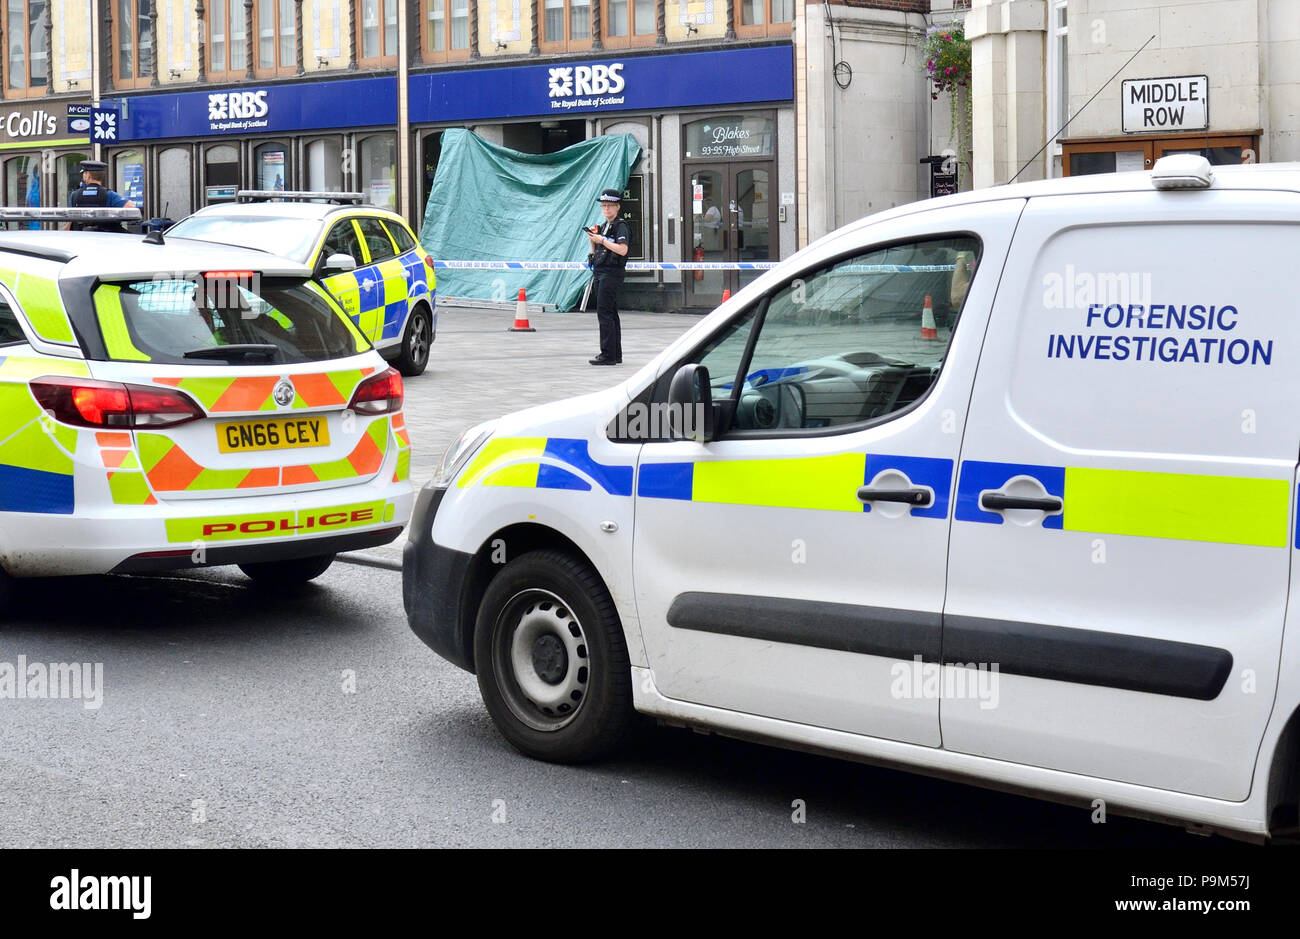 Maidstone, Kent, UK. El 19 de julio, 2018. Varios coches de policía, una ambulancia y equipo de investigación forense rodean el Royal Bank of Scotland sucursal en Maidstone High Street tras la muerte de un áspero durmiente. Una gran área de Jubileo Square en el centro de la ciudad fue acordonado tras el descubrimiento del cuerpo en la portada de la RBS sucursal esta mañana. La policía fue llamada alrededor de las 8:45am - la muerte no está siendo tratado como sospechoso. Crédito: PjrNews/Alamy Live News Foto de stock